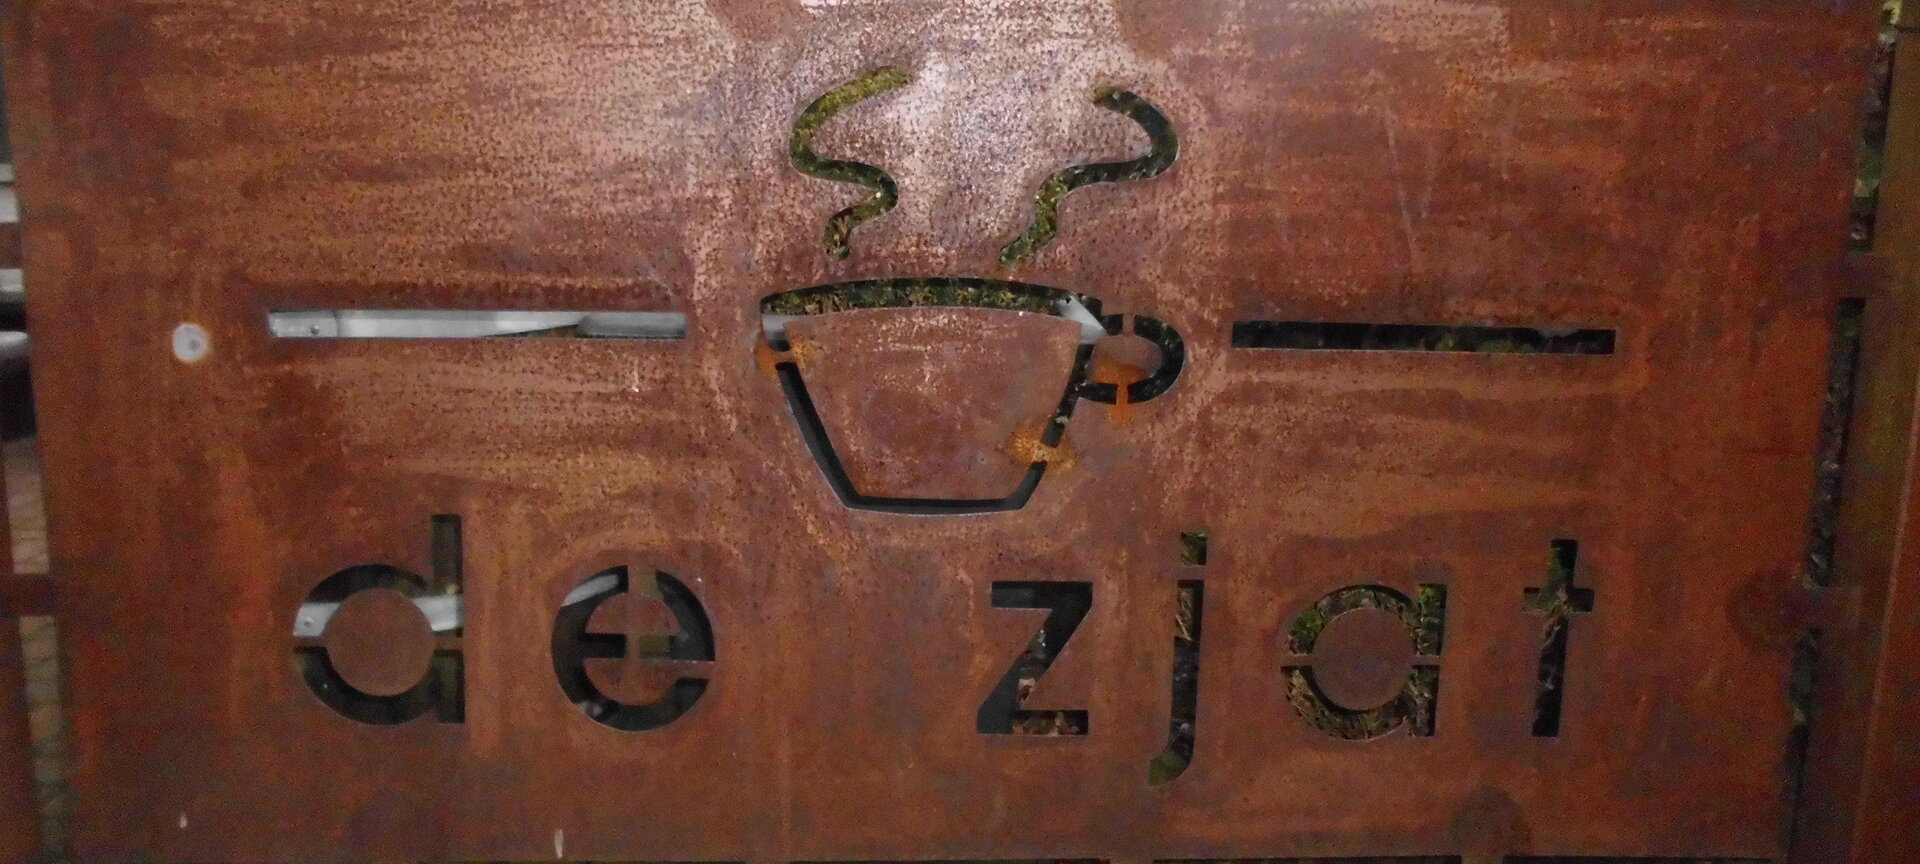 Eetkaffee De Zjat - logo